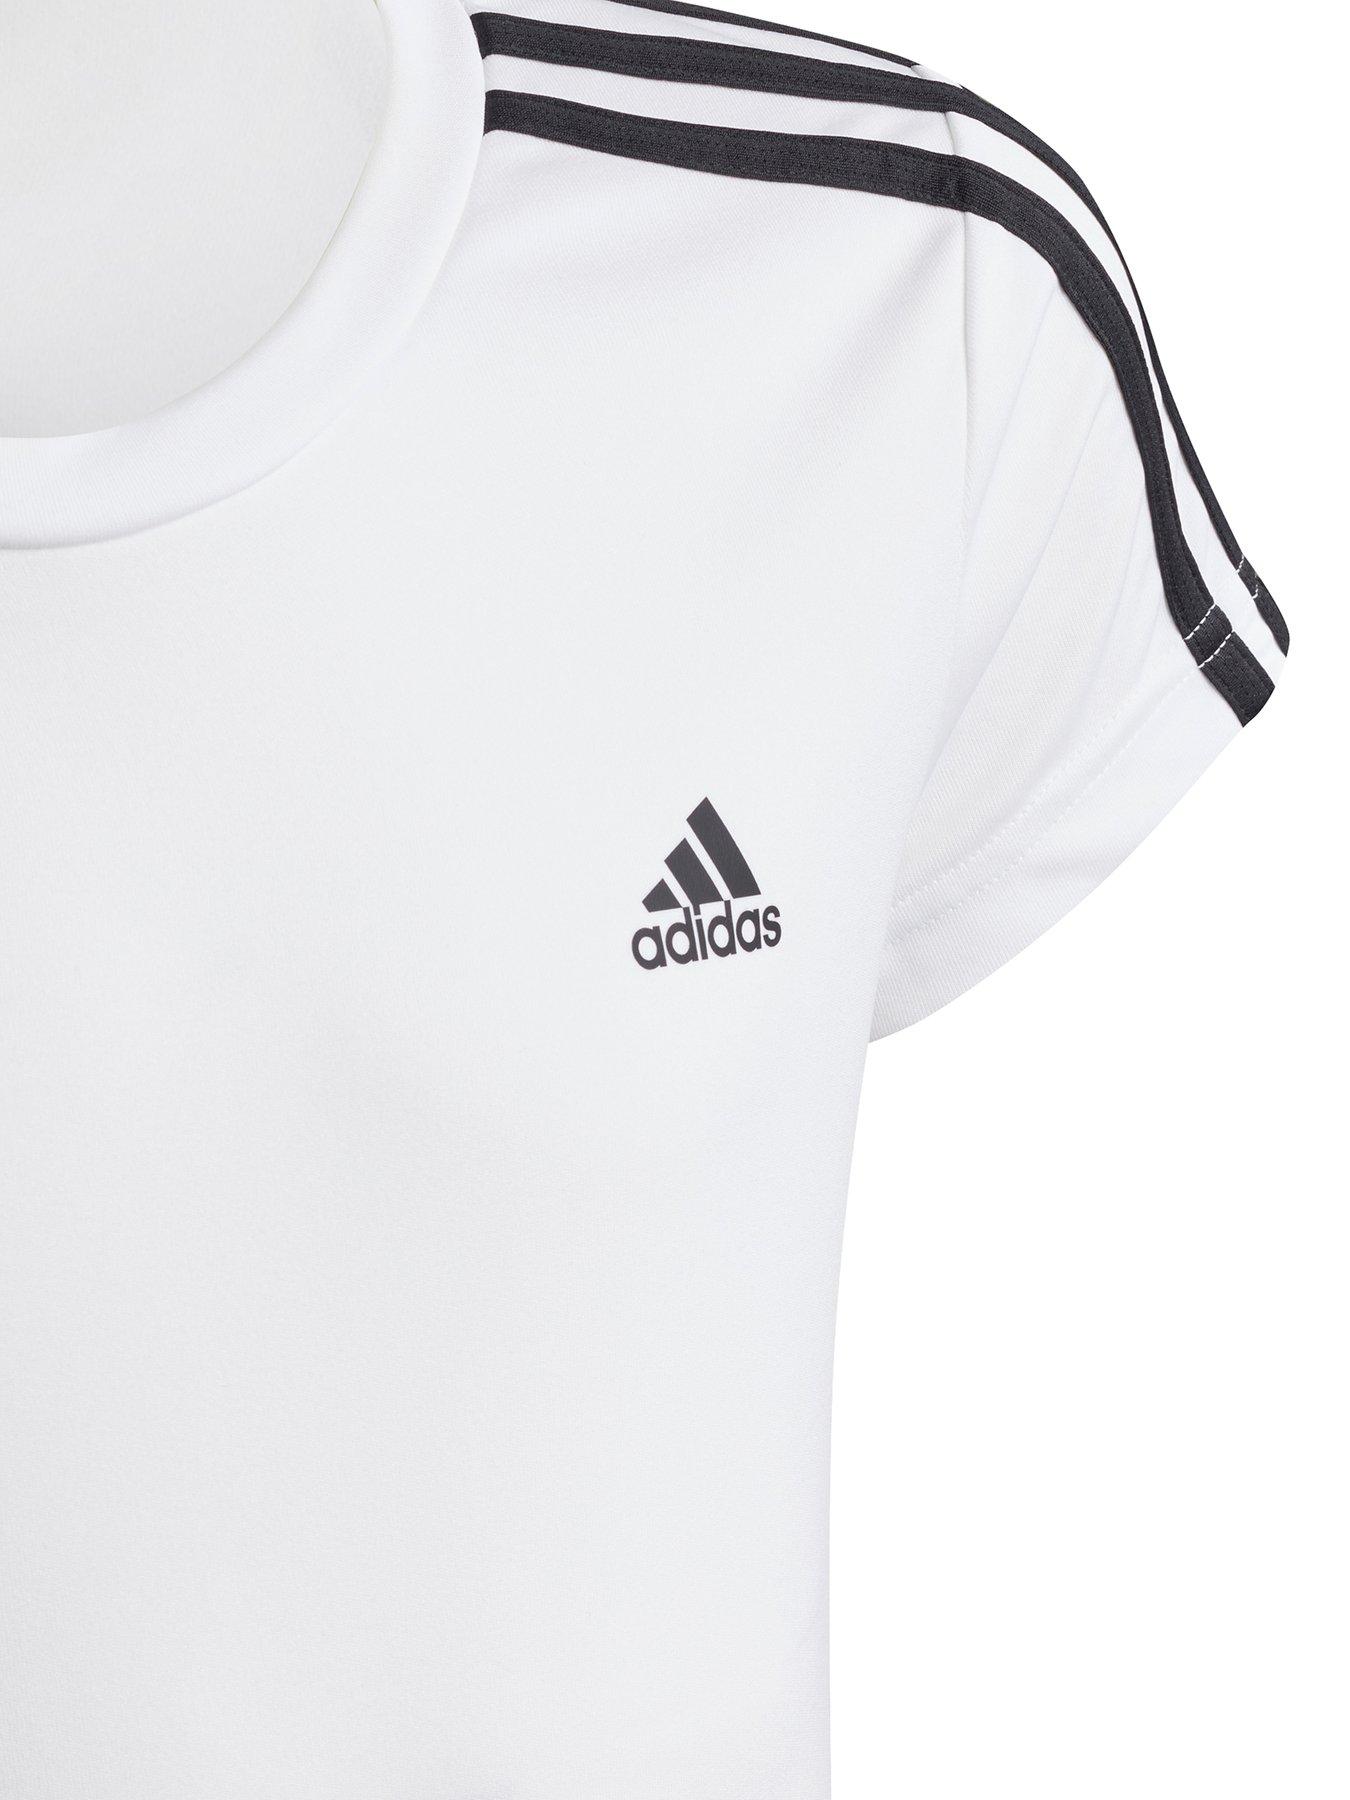 adidas Designed 2 Move Girls 3 Stripes Short Sleeve T-Shirt - White |  